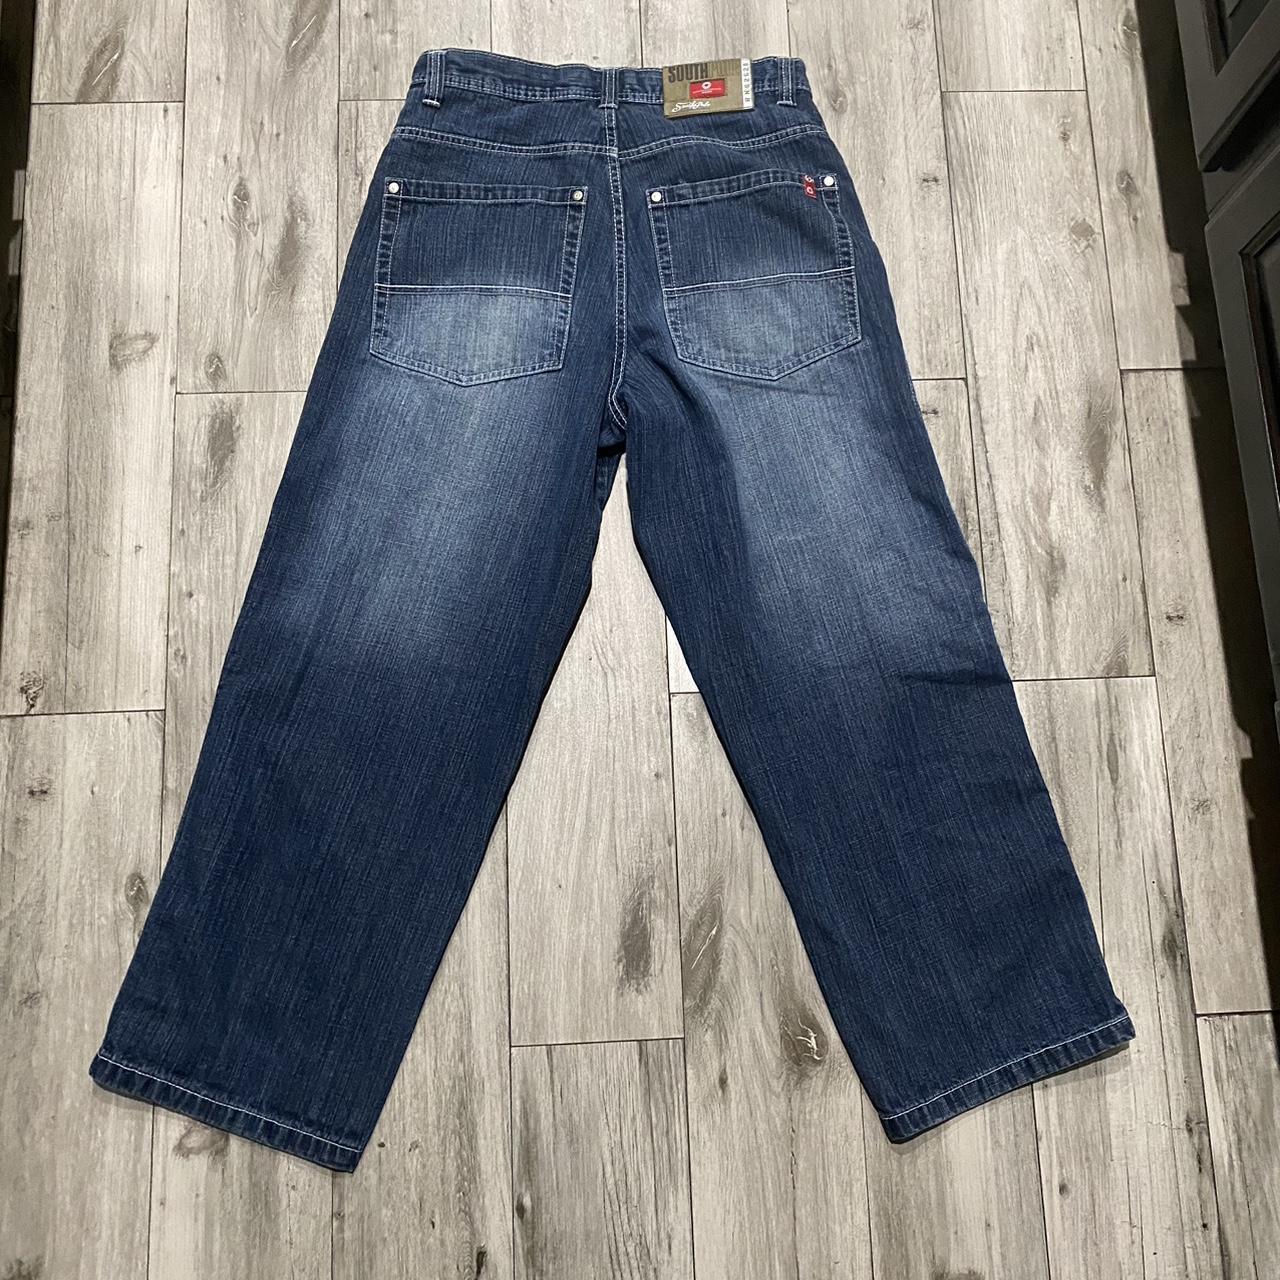 Southpole Men's Blue Jeans | Depop